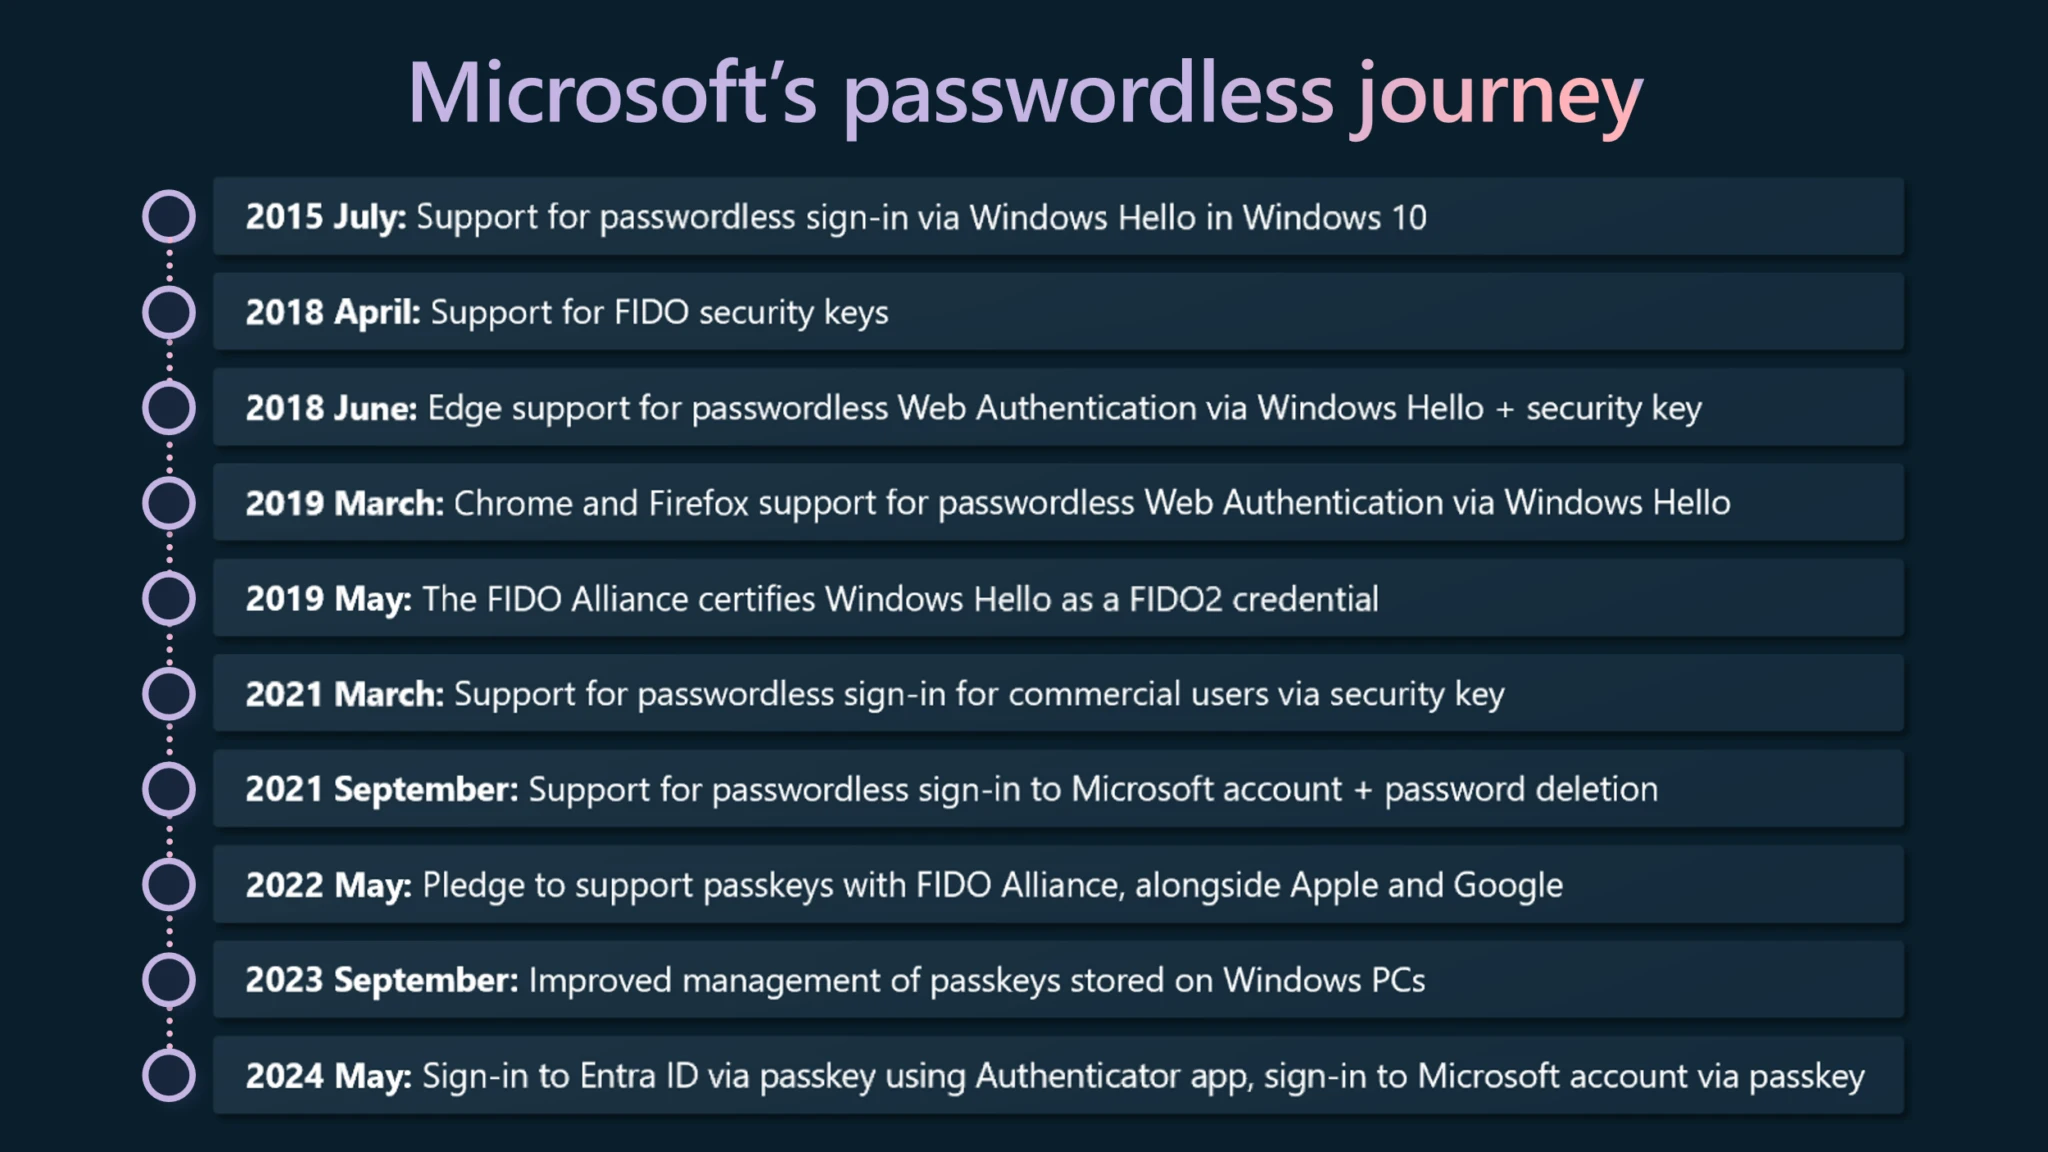 Microsoft's passwordless journey